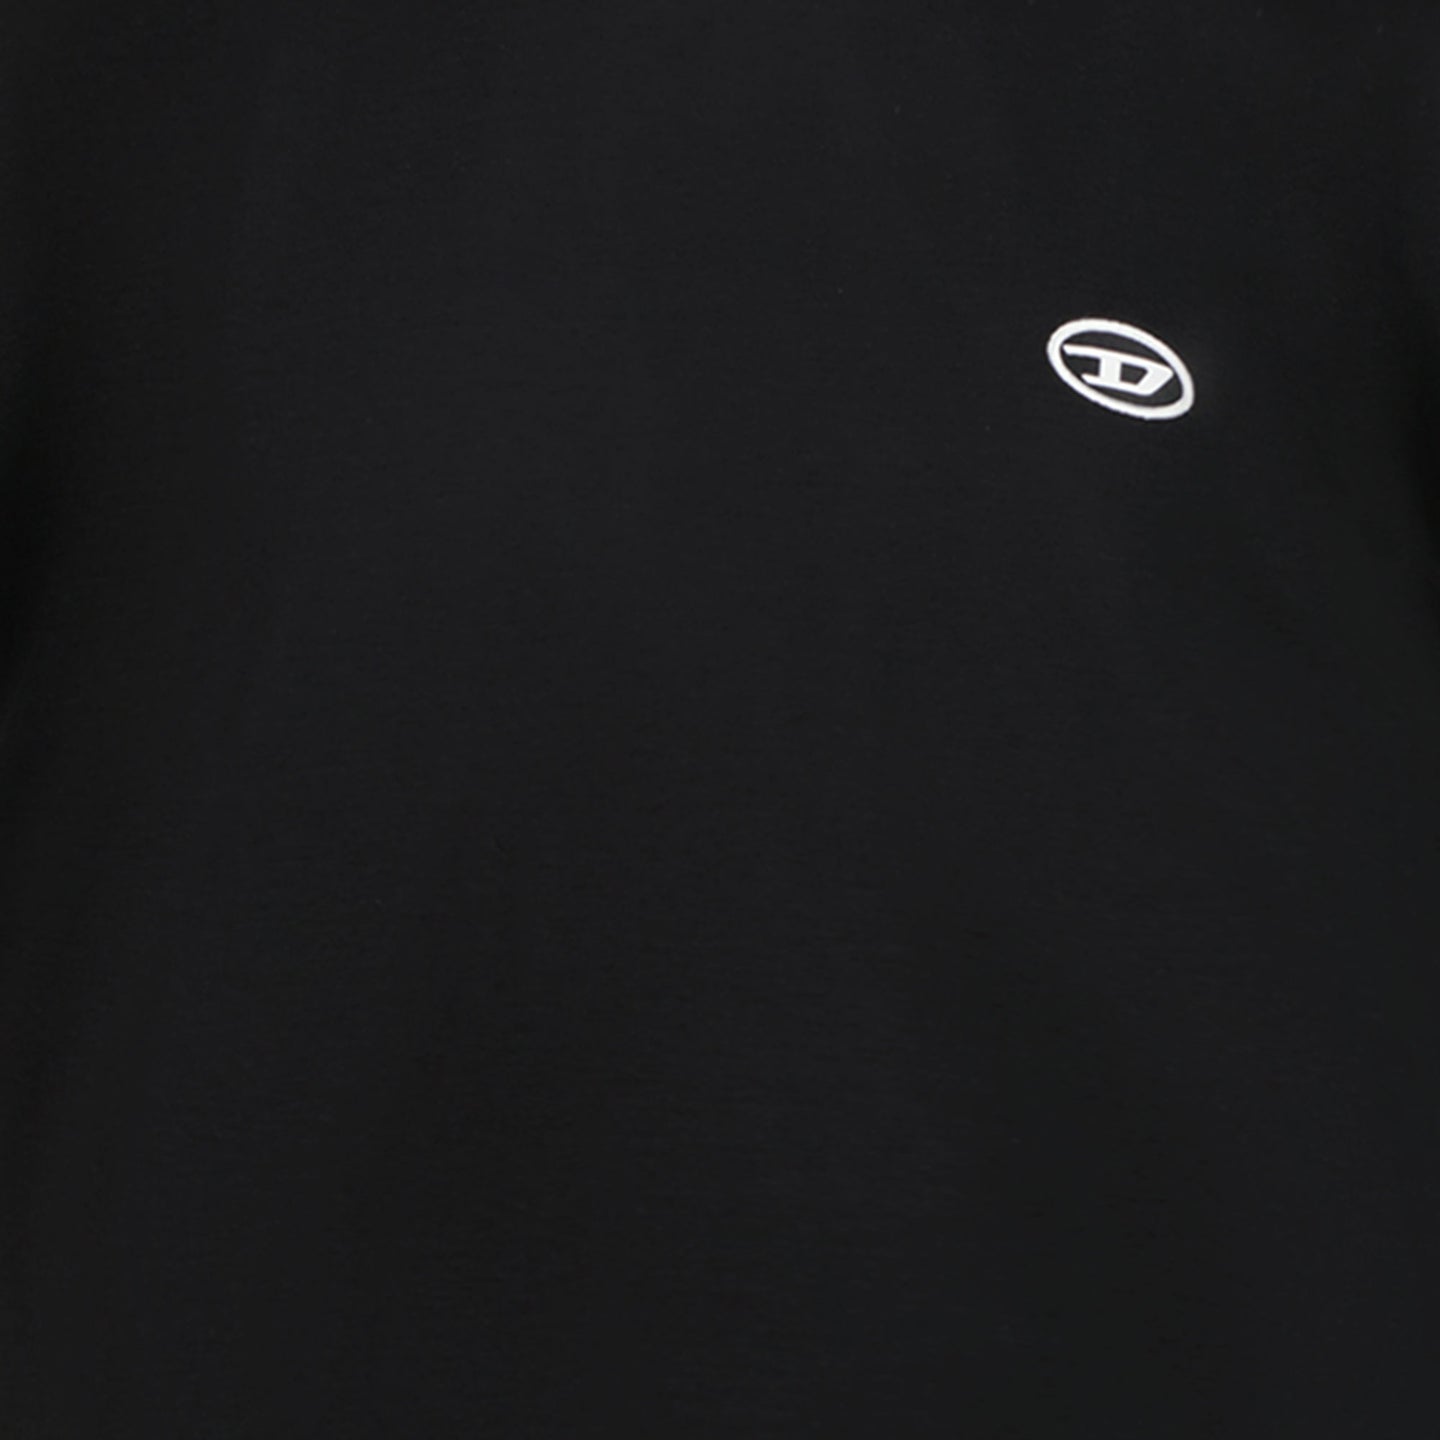 Diesel Garçons T-shirt Noir